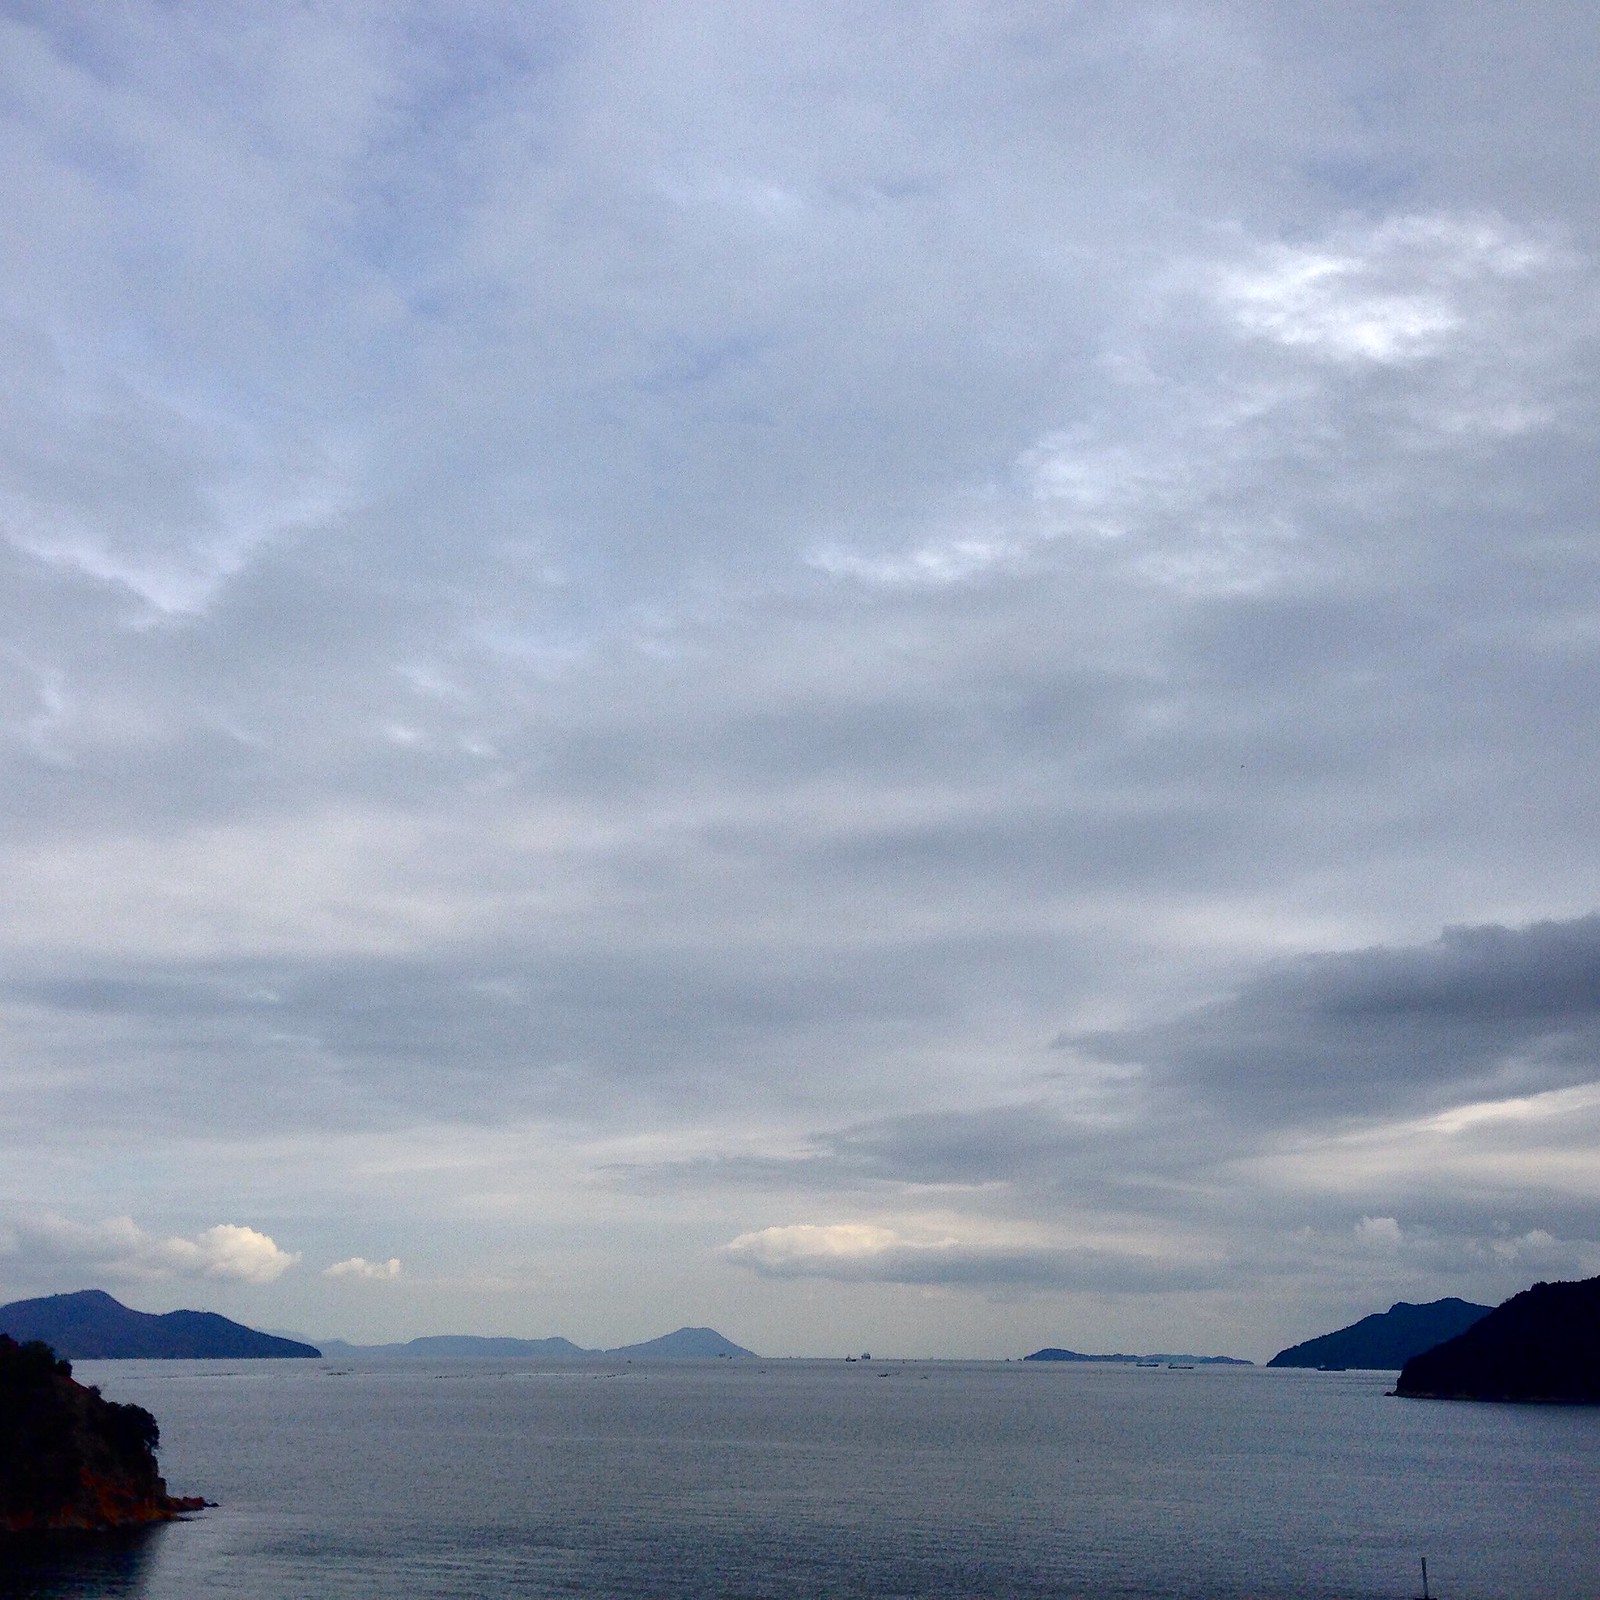 Naoshima Beauty